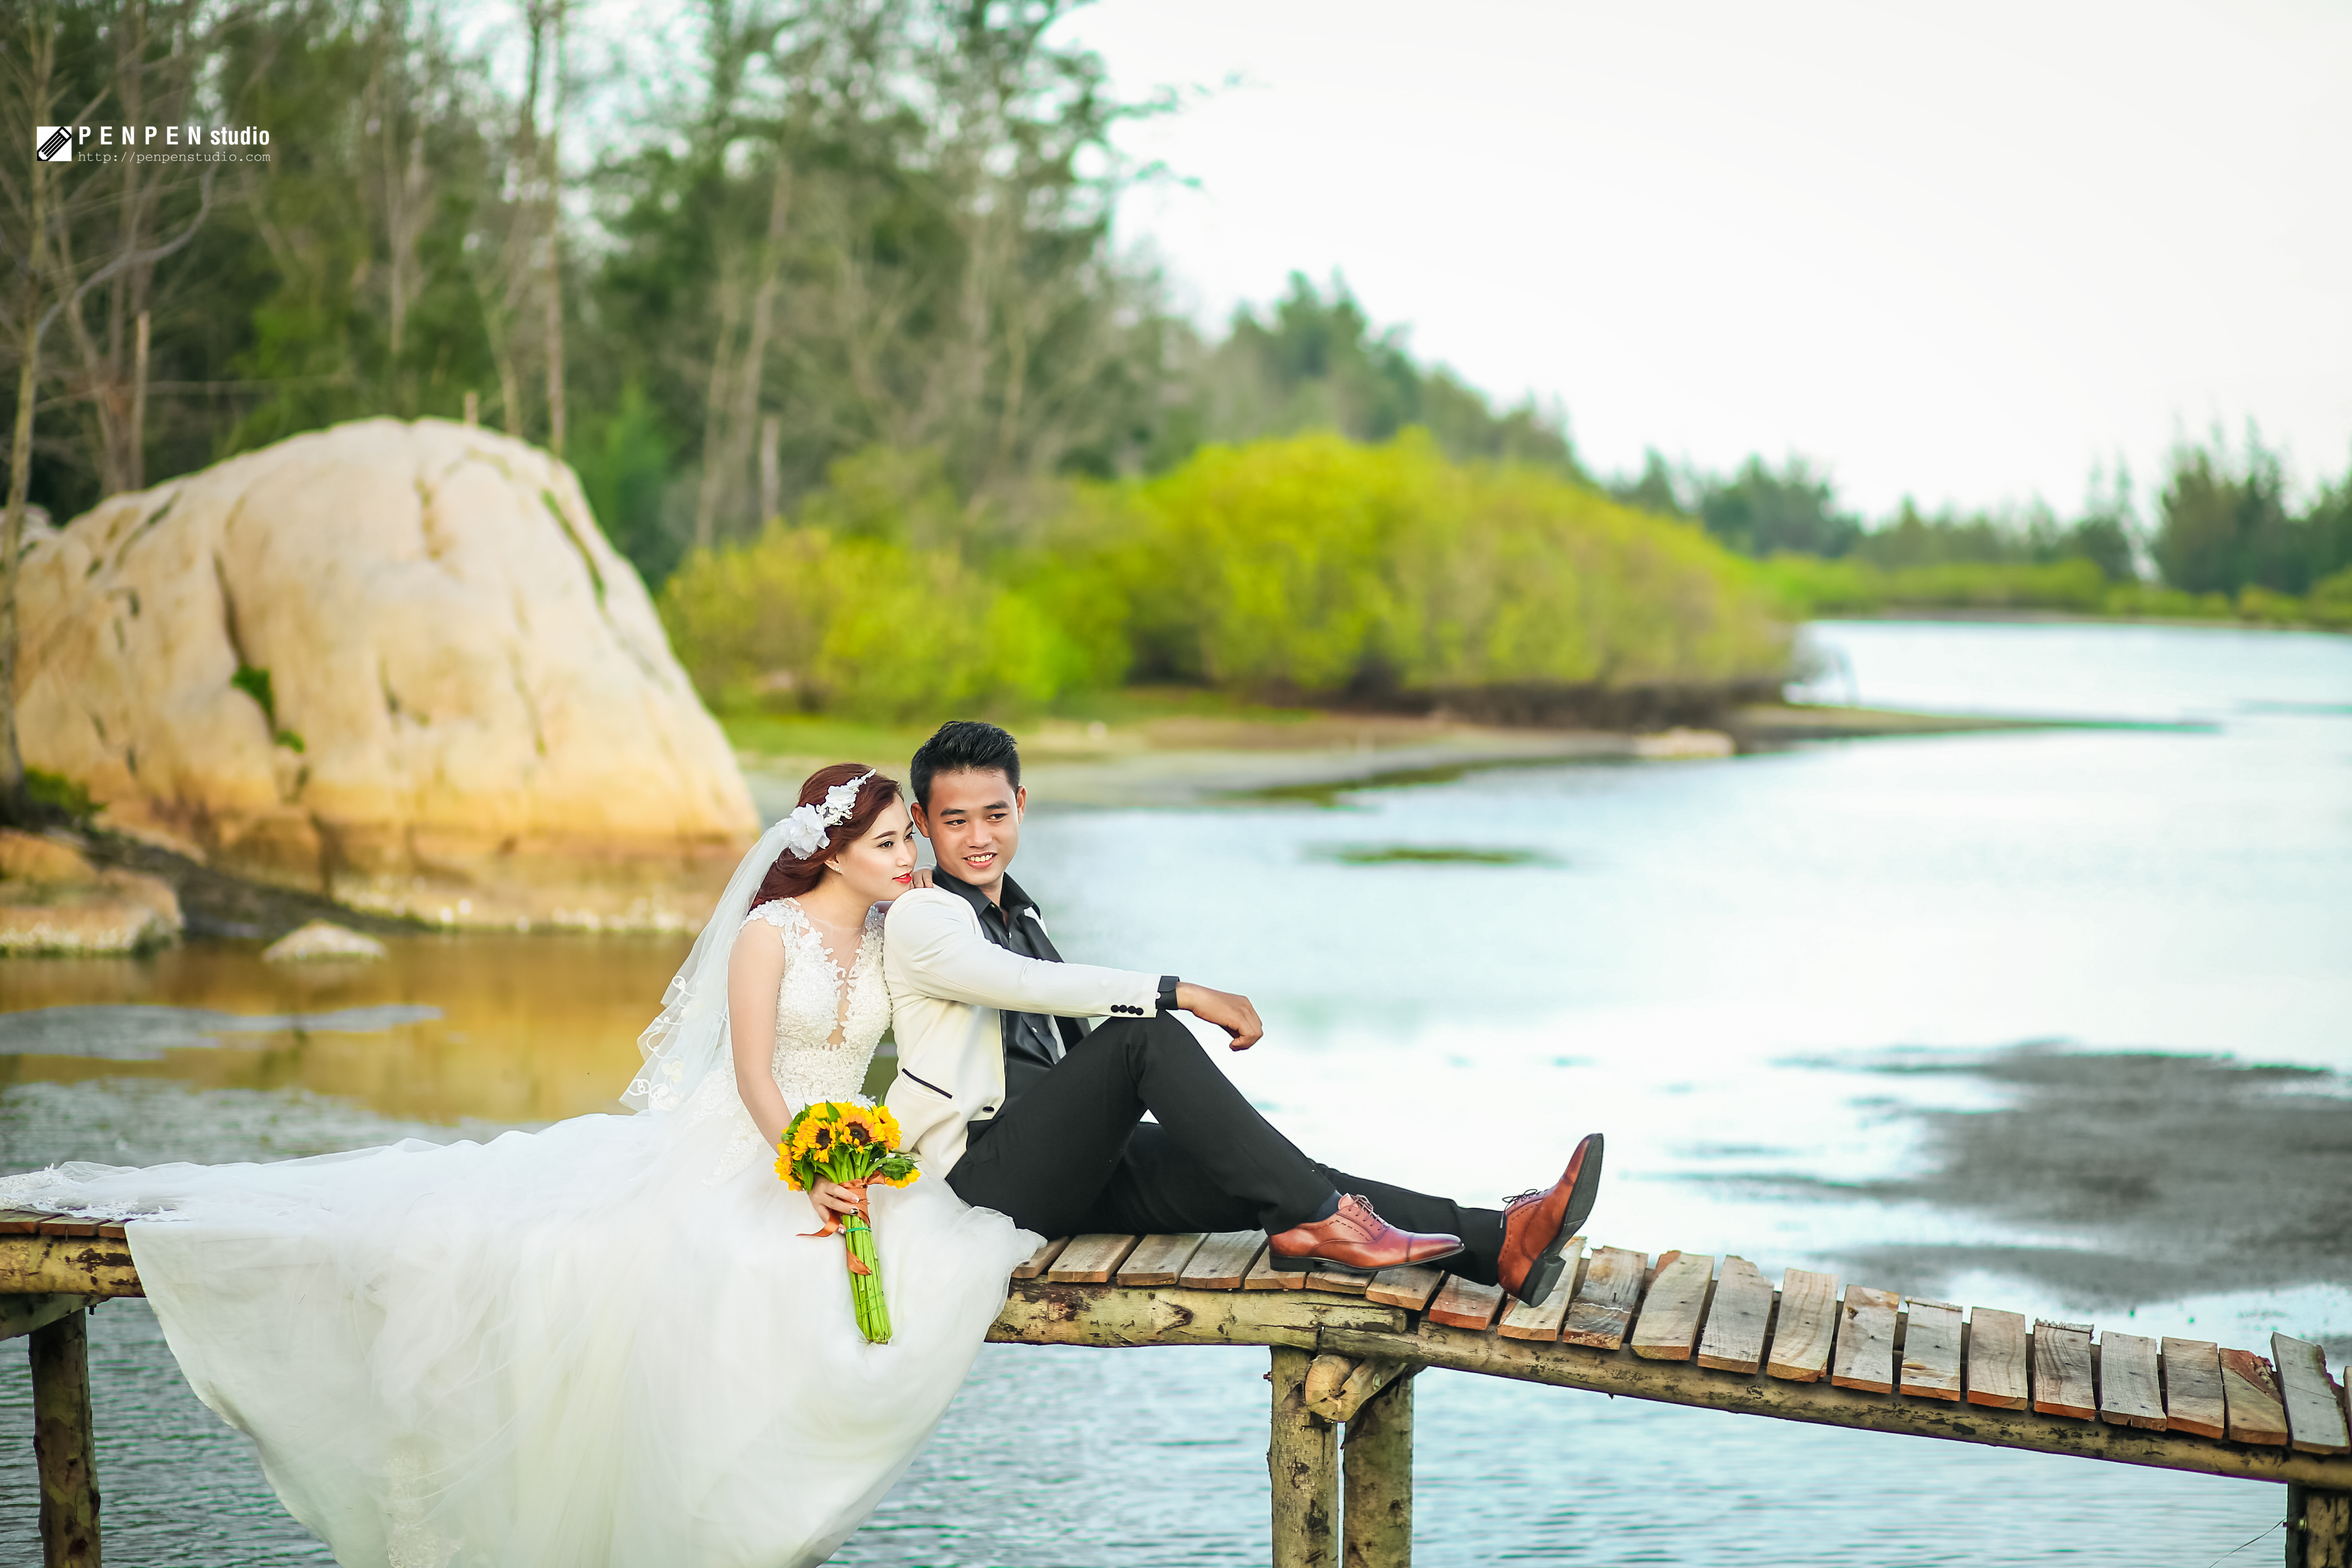 Chụp hình cưới Hồ Cốc - Nơi tạo những album ảnh cưới đáng nhớ nhất.